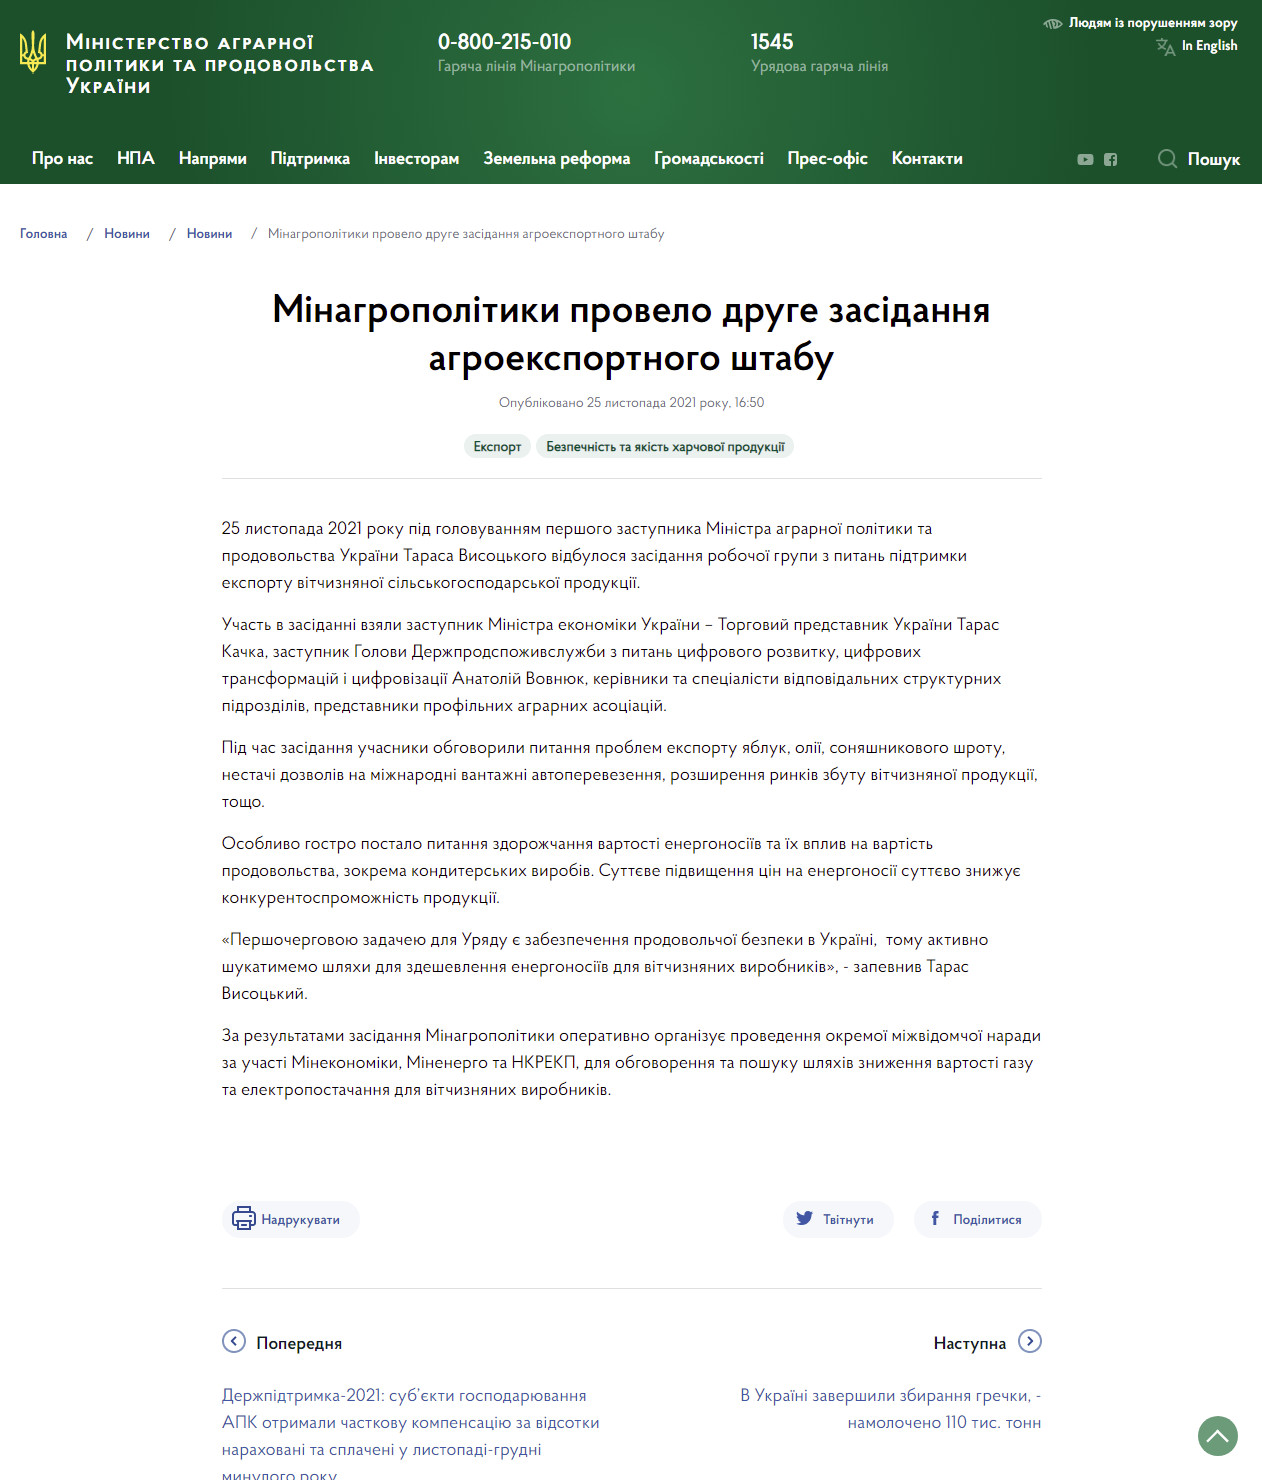 https://minagro.gov.ua/ua/news/minagropolitiki-provelo-druge-zasidannya-agroeksportnogo-shtabu